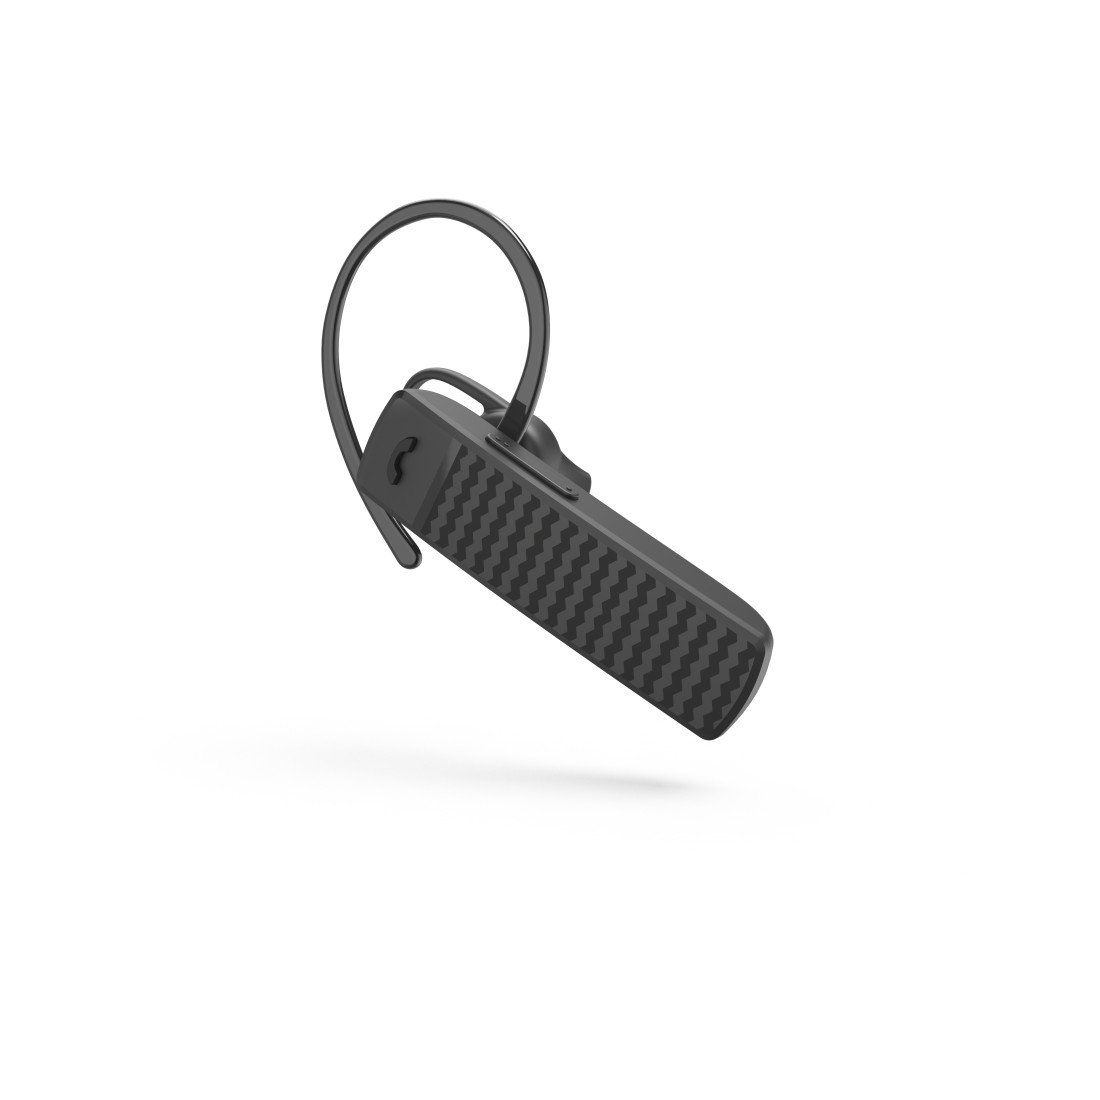 Hama Mono-Bluetooth®-Headset MyVoice1500, Multipoint, Sprachsteuerung, Schwarz